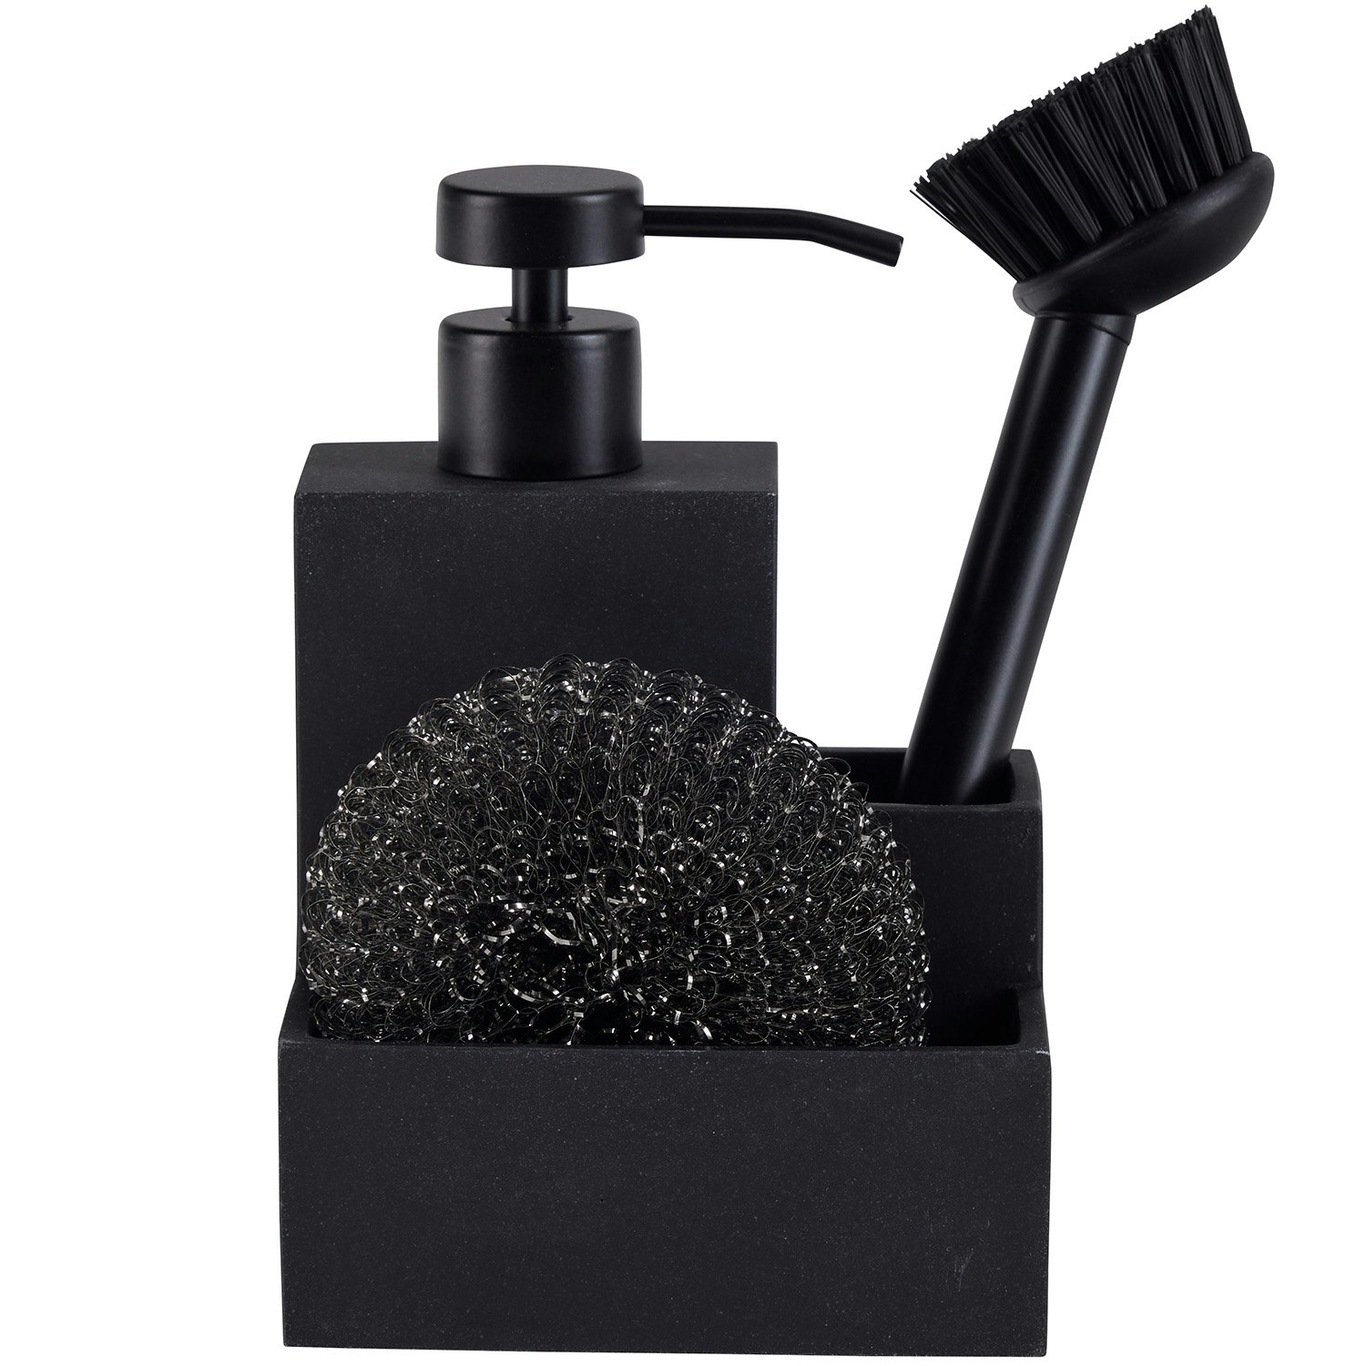 https://royaldesign.com/image/2/bahne-soap-dispenser-brush-sponge-3in1-black-square-0?w=800&quality=80